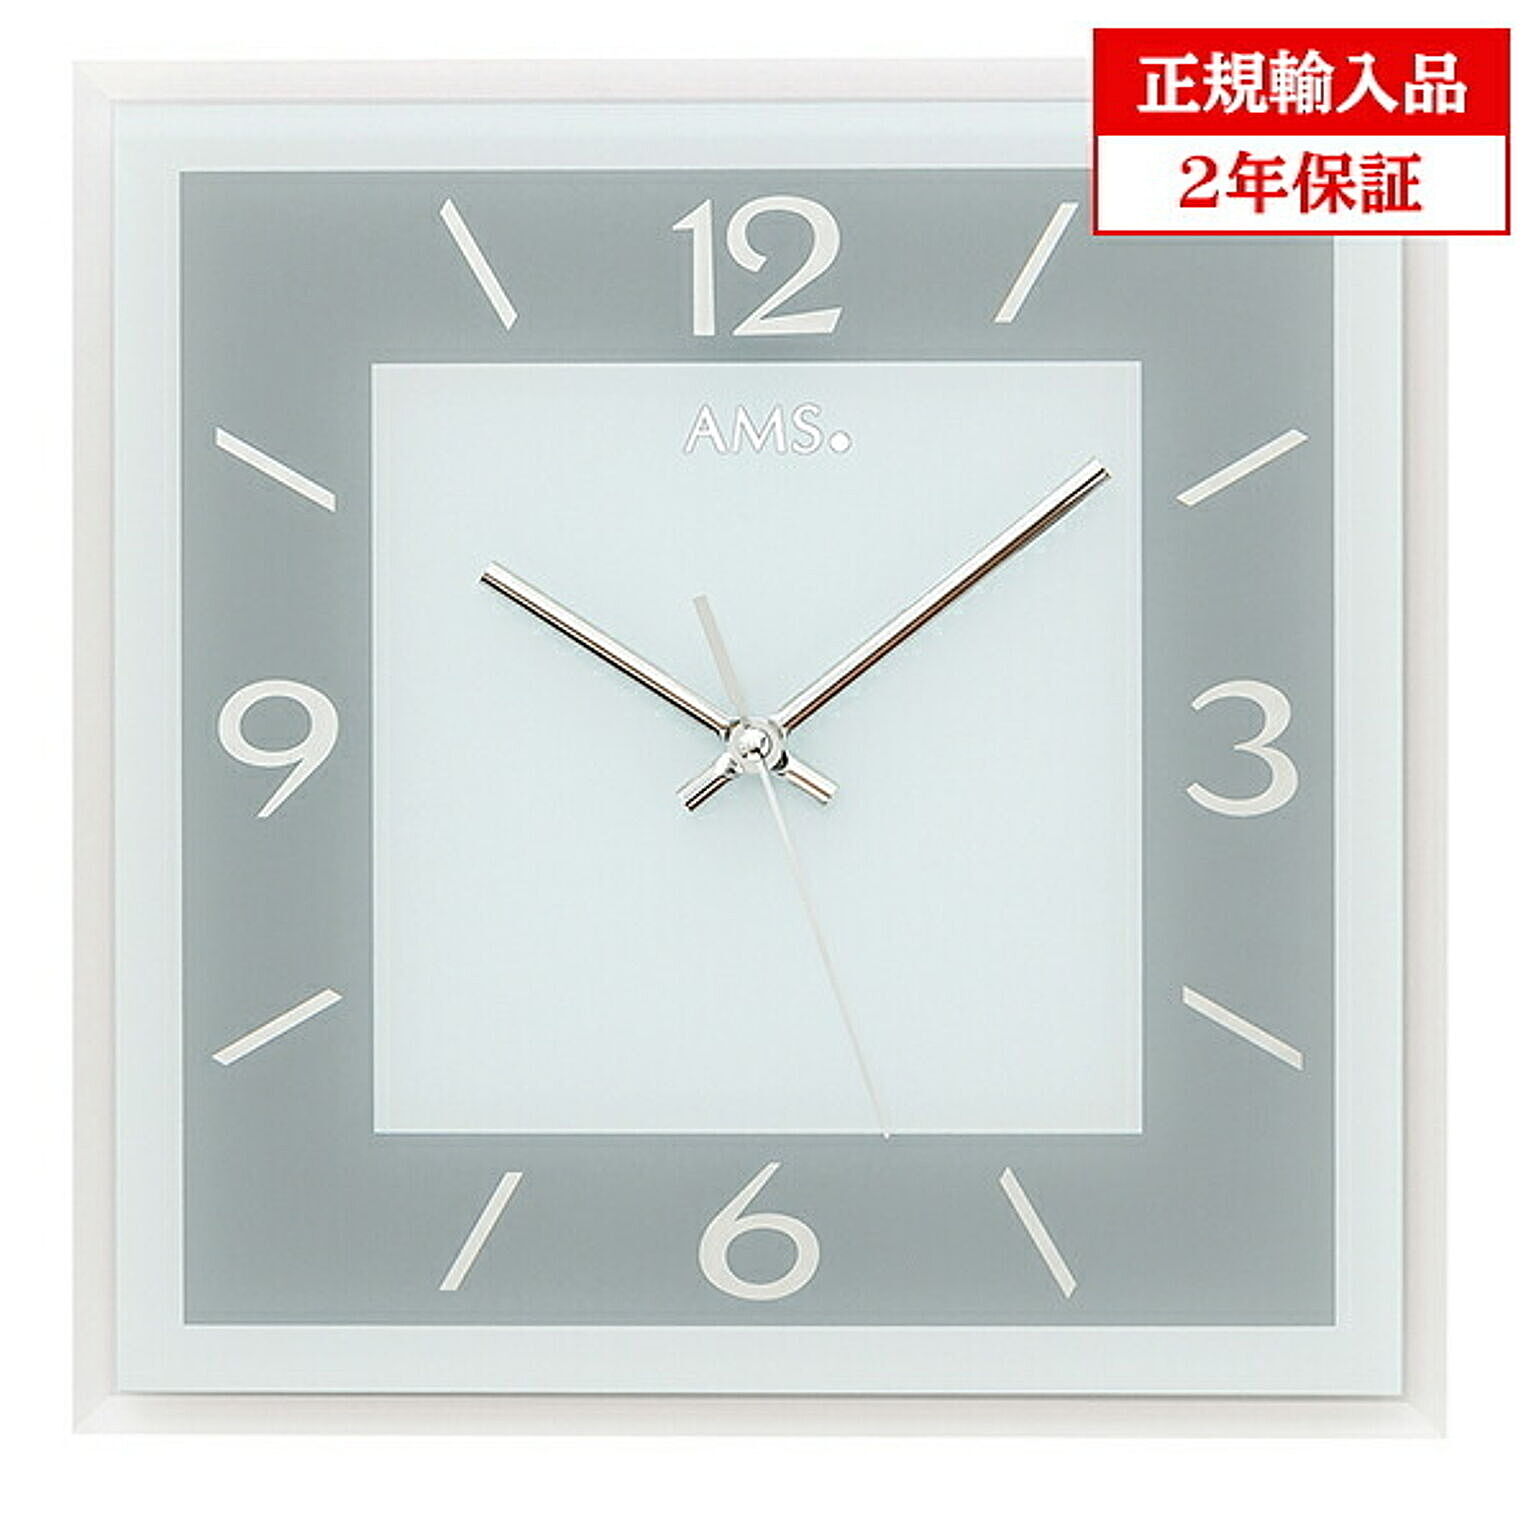 アームス社 AMS 9573 クオーツ 掛け時計 (掛時計) ドイツ製 【正規輸入品】【メーカー保証2年】